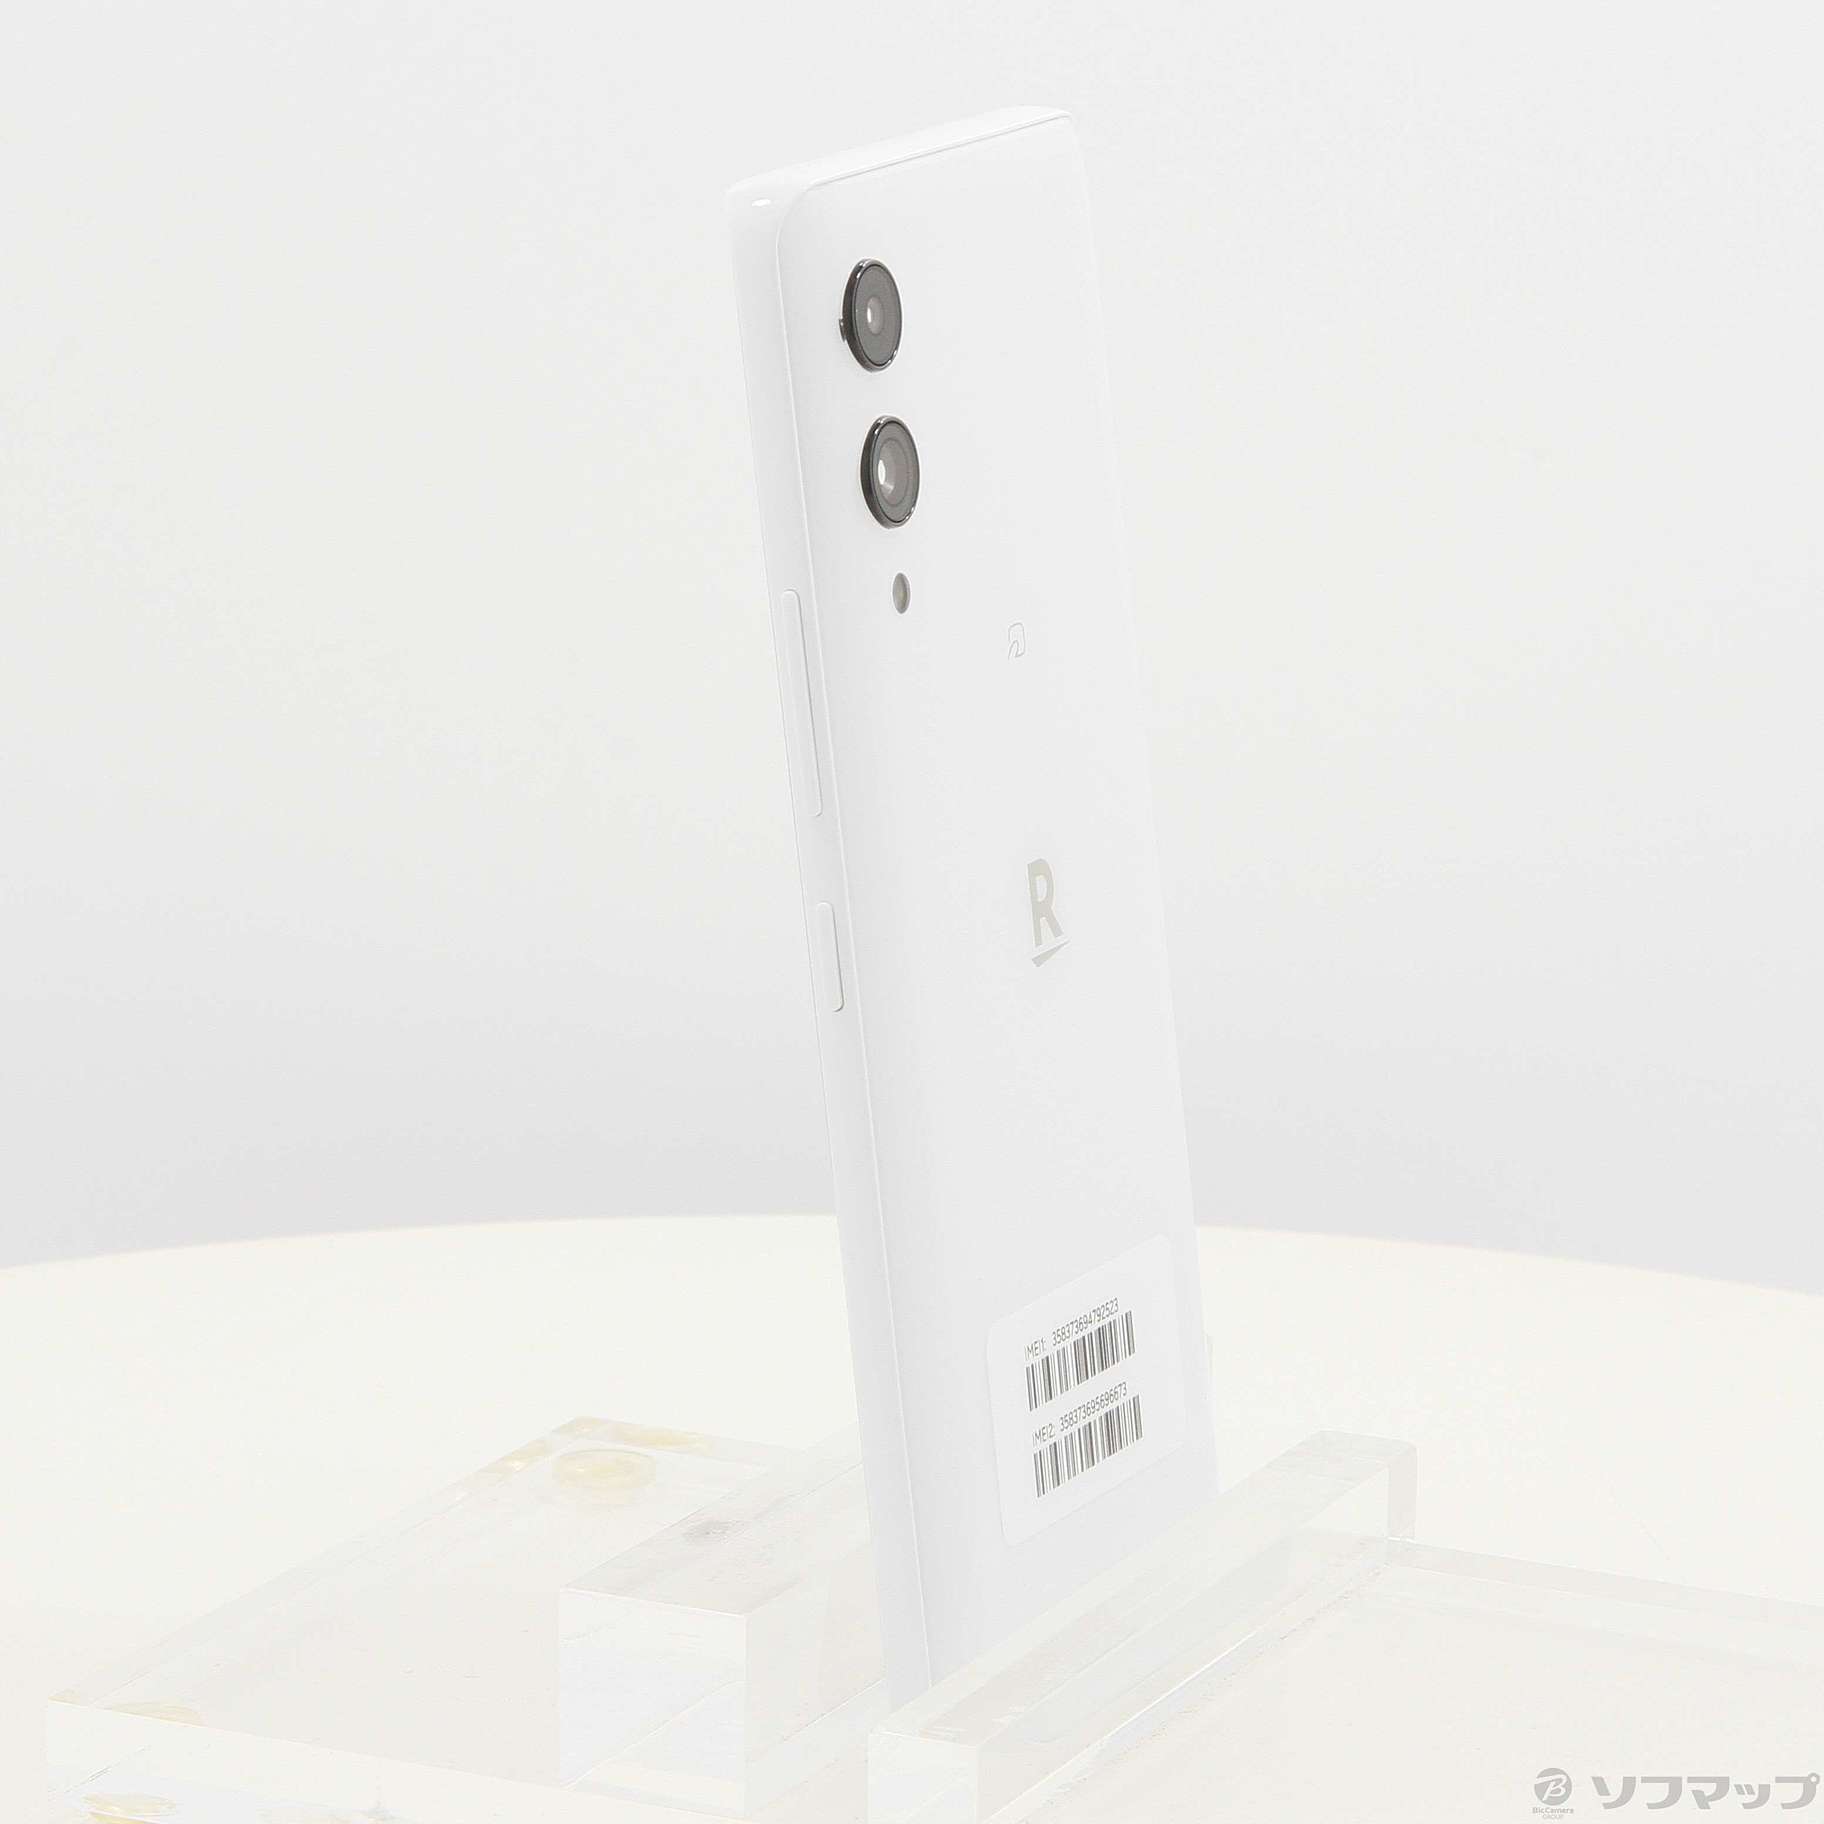 Rakuten Hand 5G ホワイト 128 GB（販売終了品） - dzhistory.com